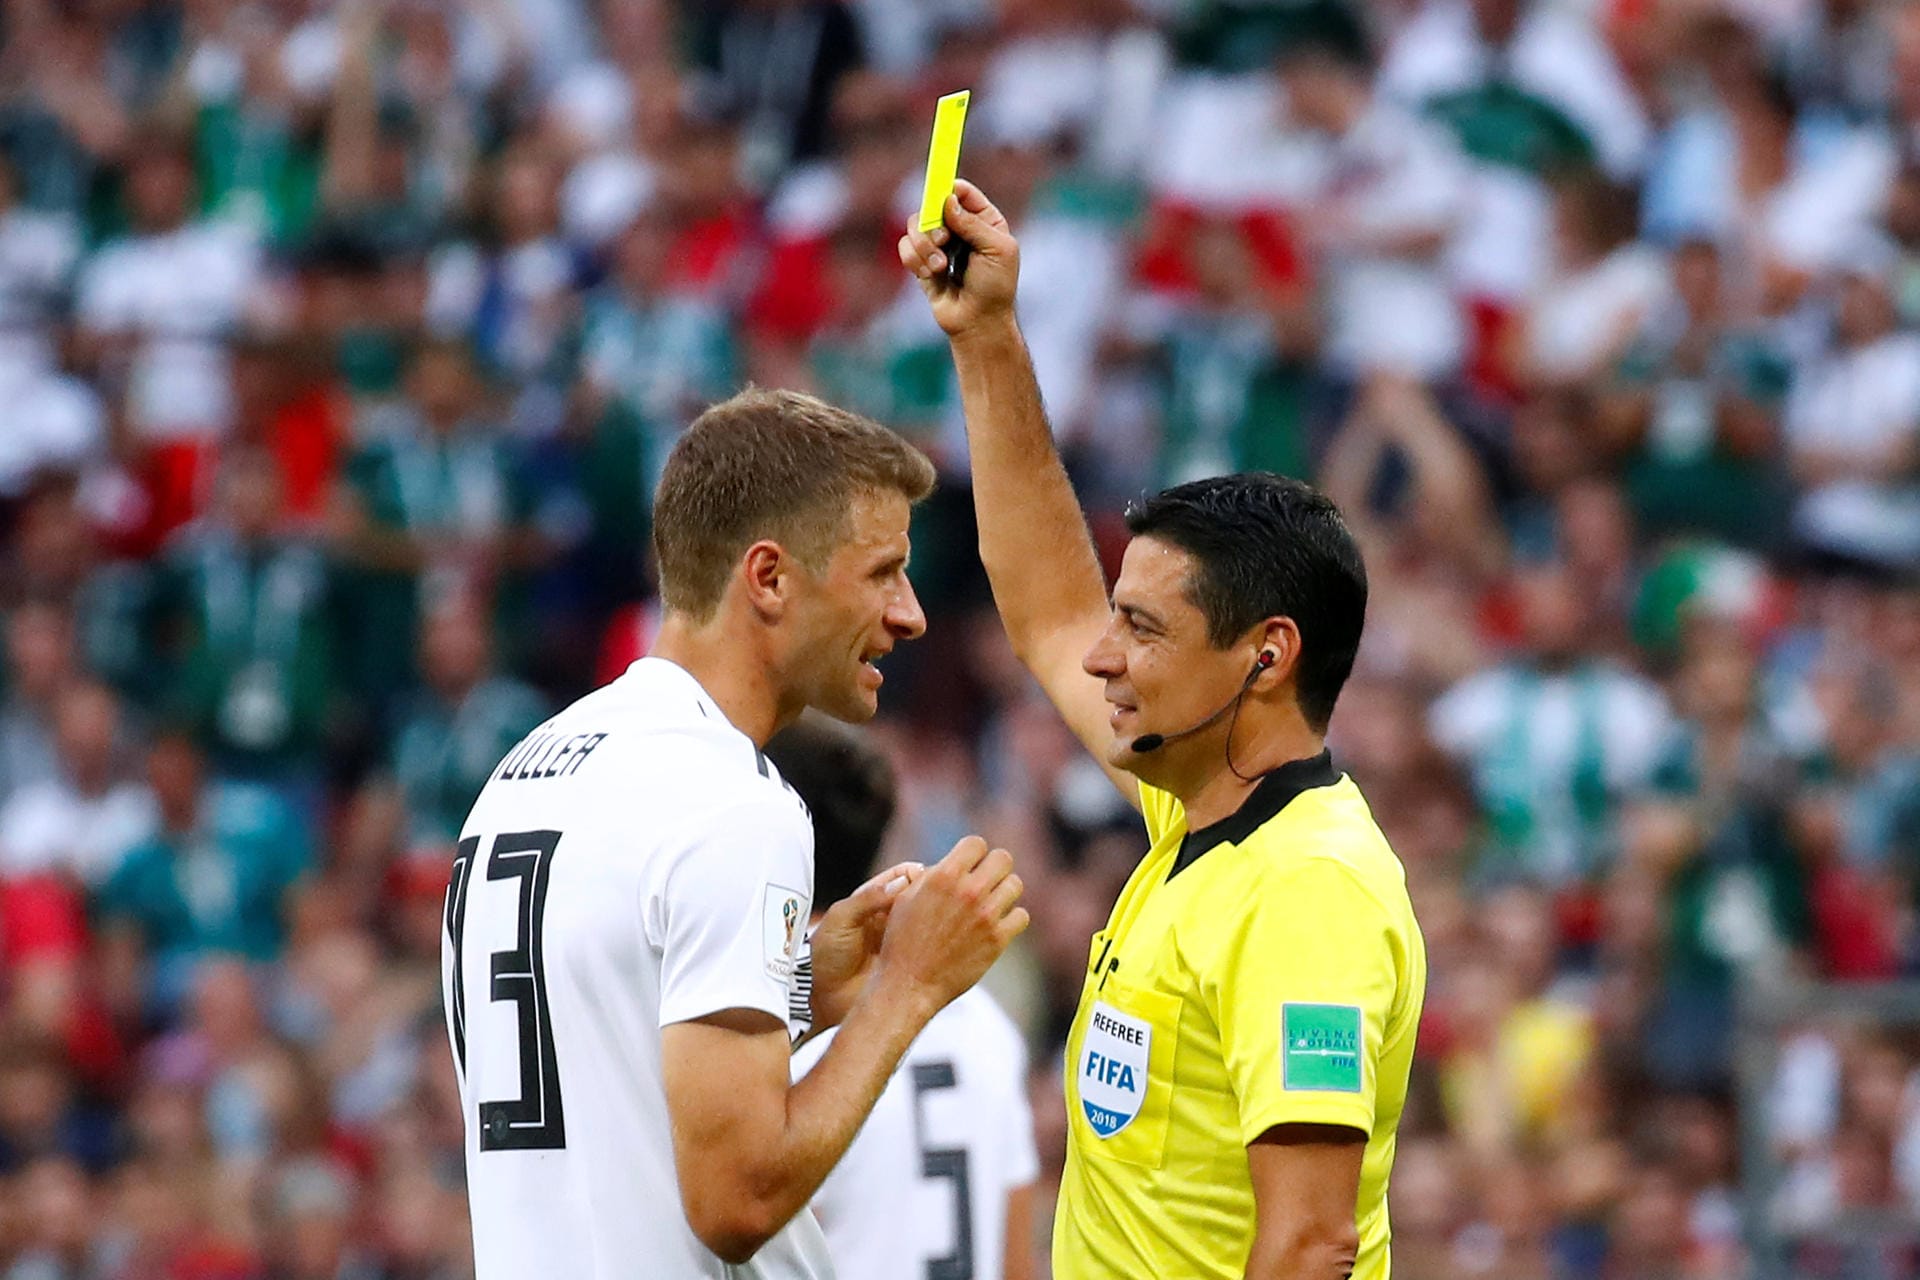 Thomas Müller sieht nach Foulspiel Gelb: Die erste gelbe Karte für Deutschland bei dieser WM.